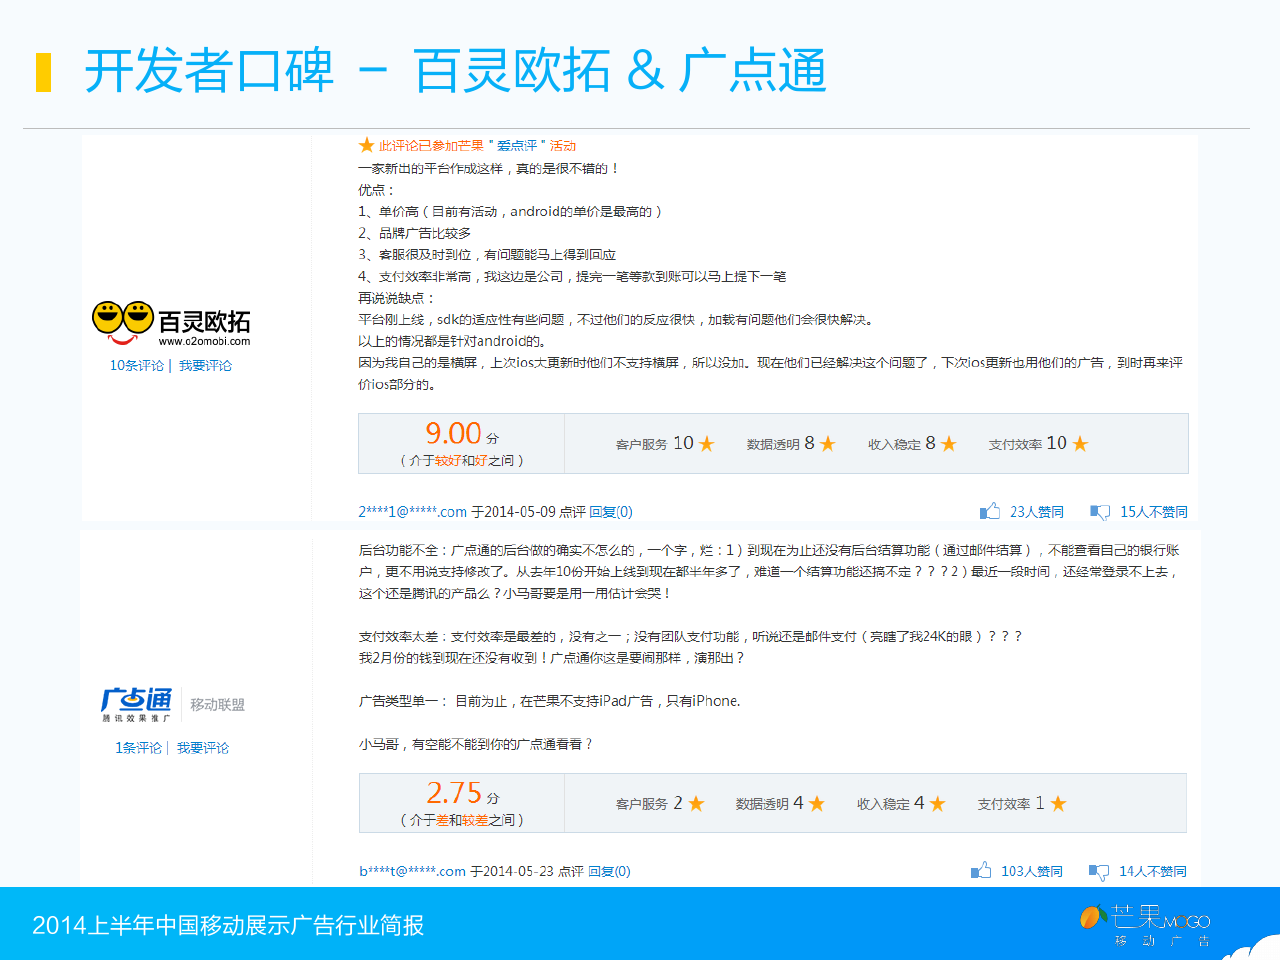 2014上半年中国移动展示广告行业简报_000019